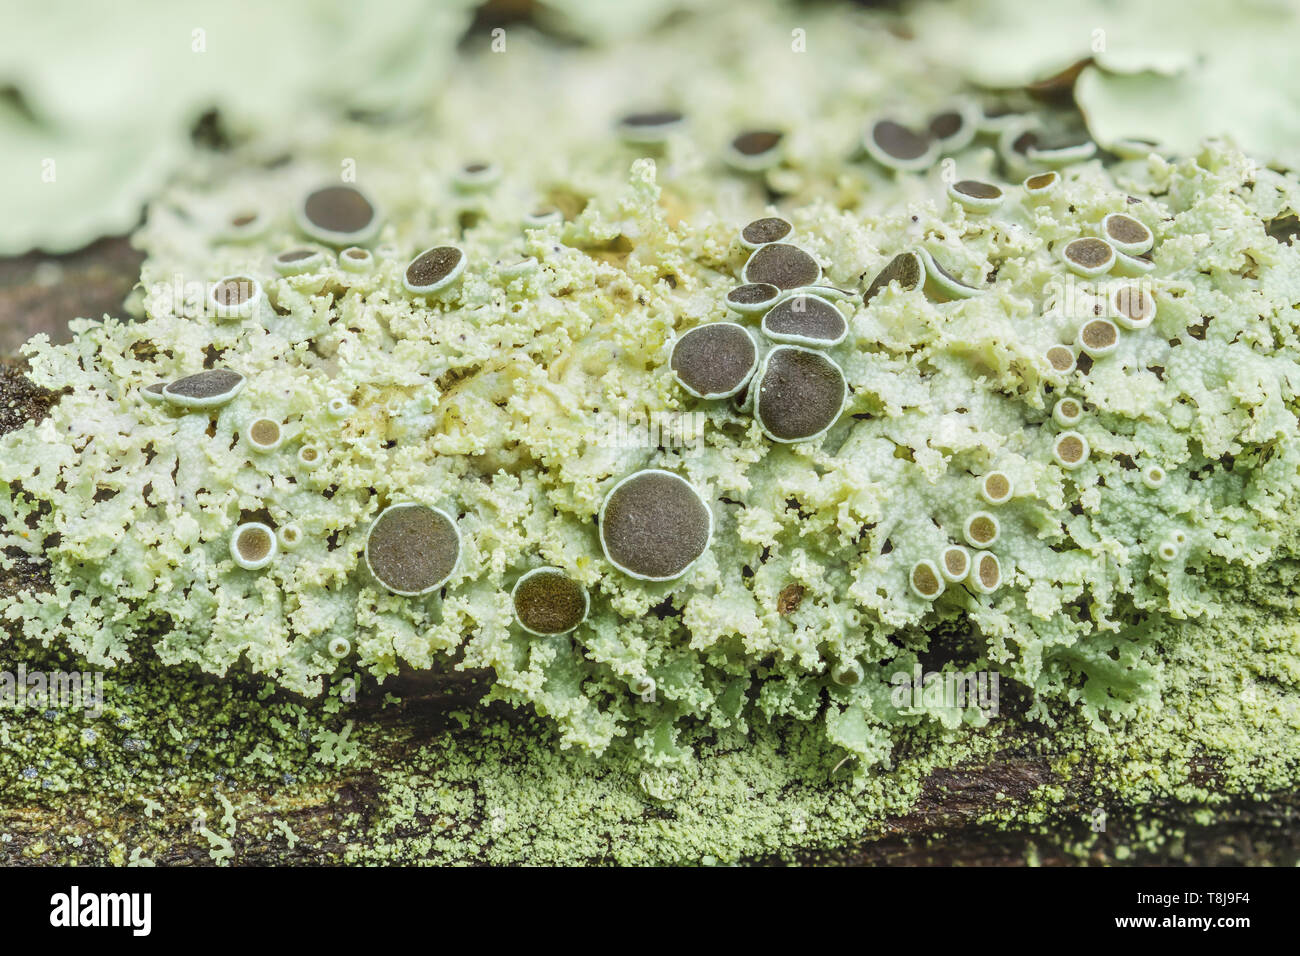 Lichen (Physcia), a small, foliose lichen, growing on a tree branch. Stock Photo